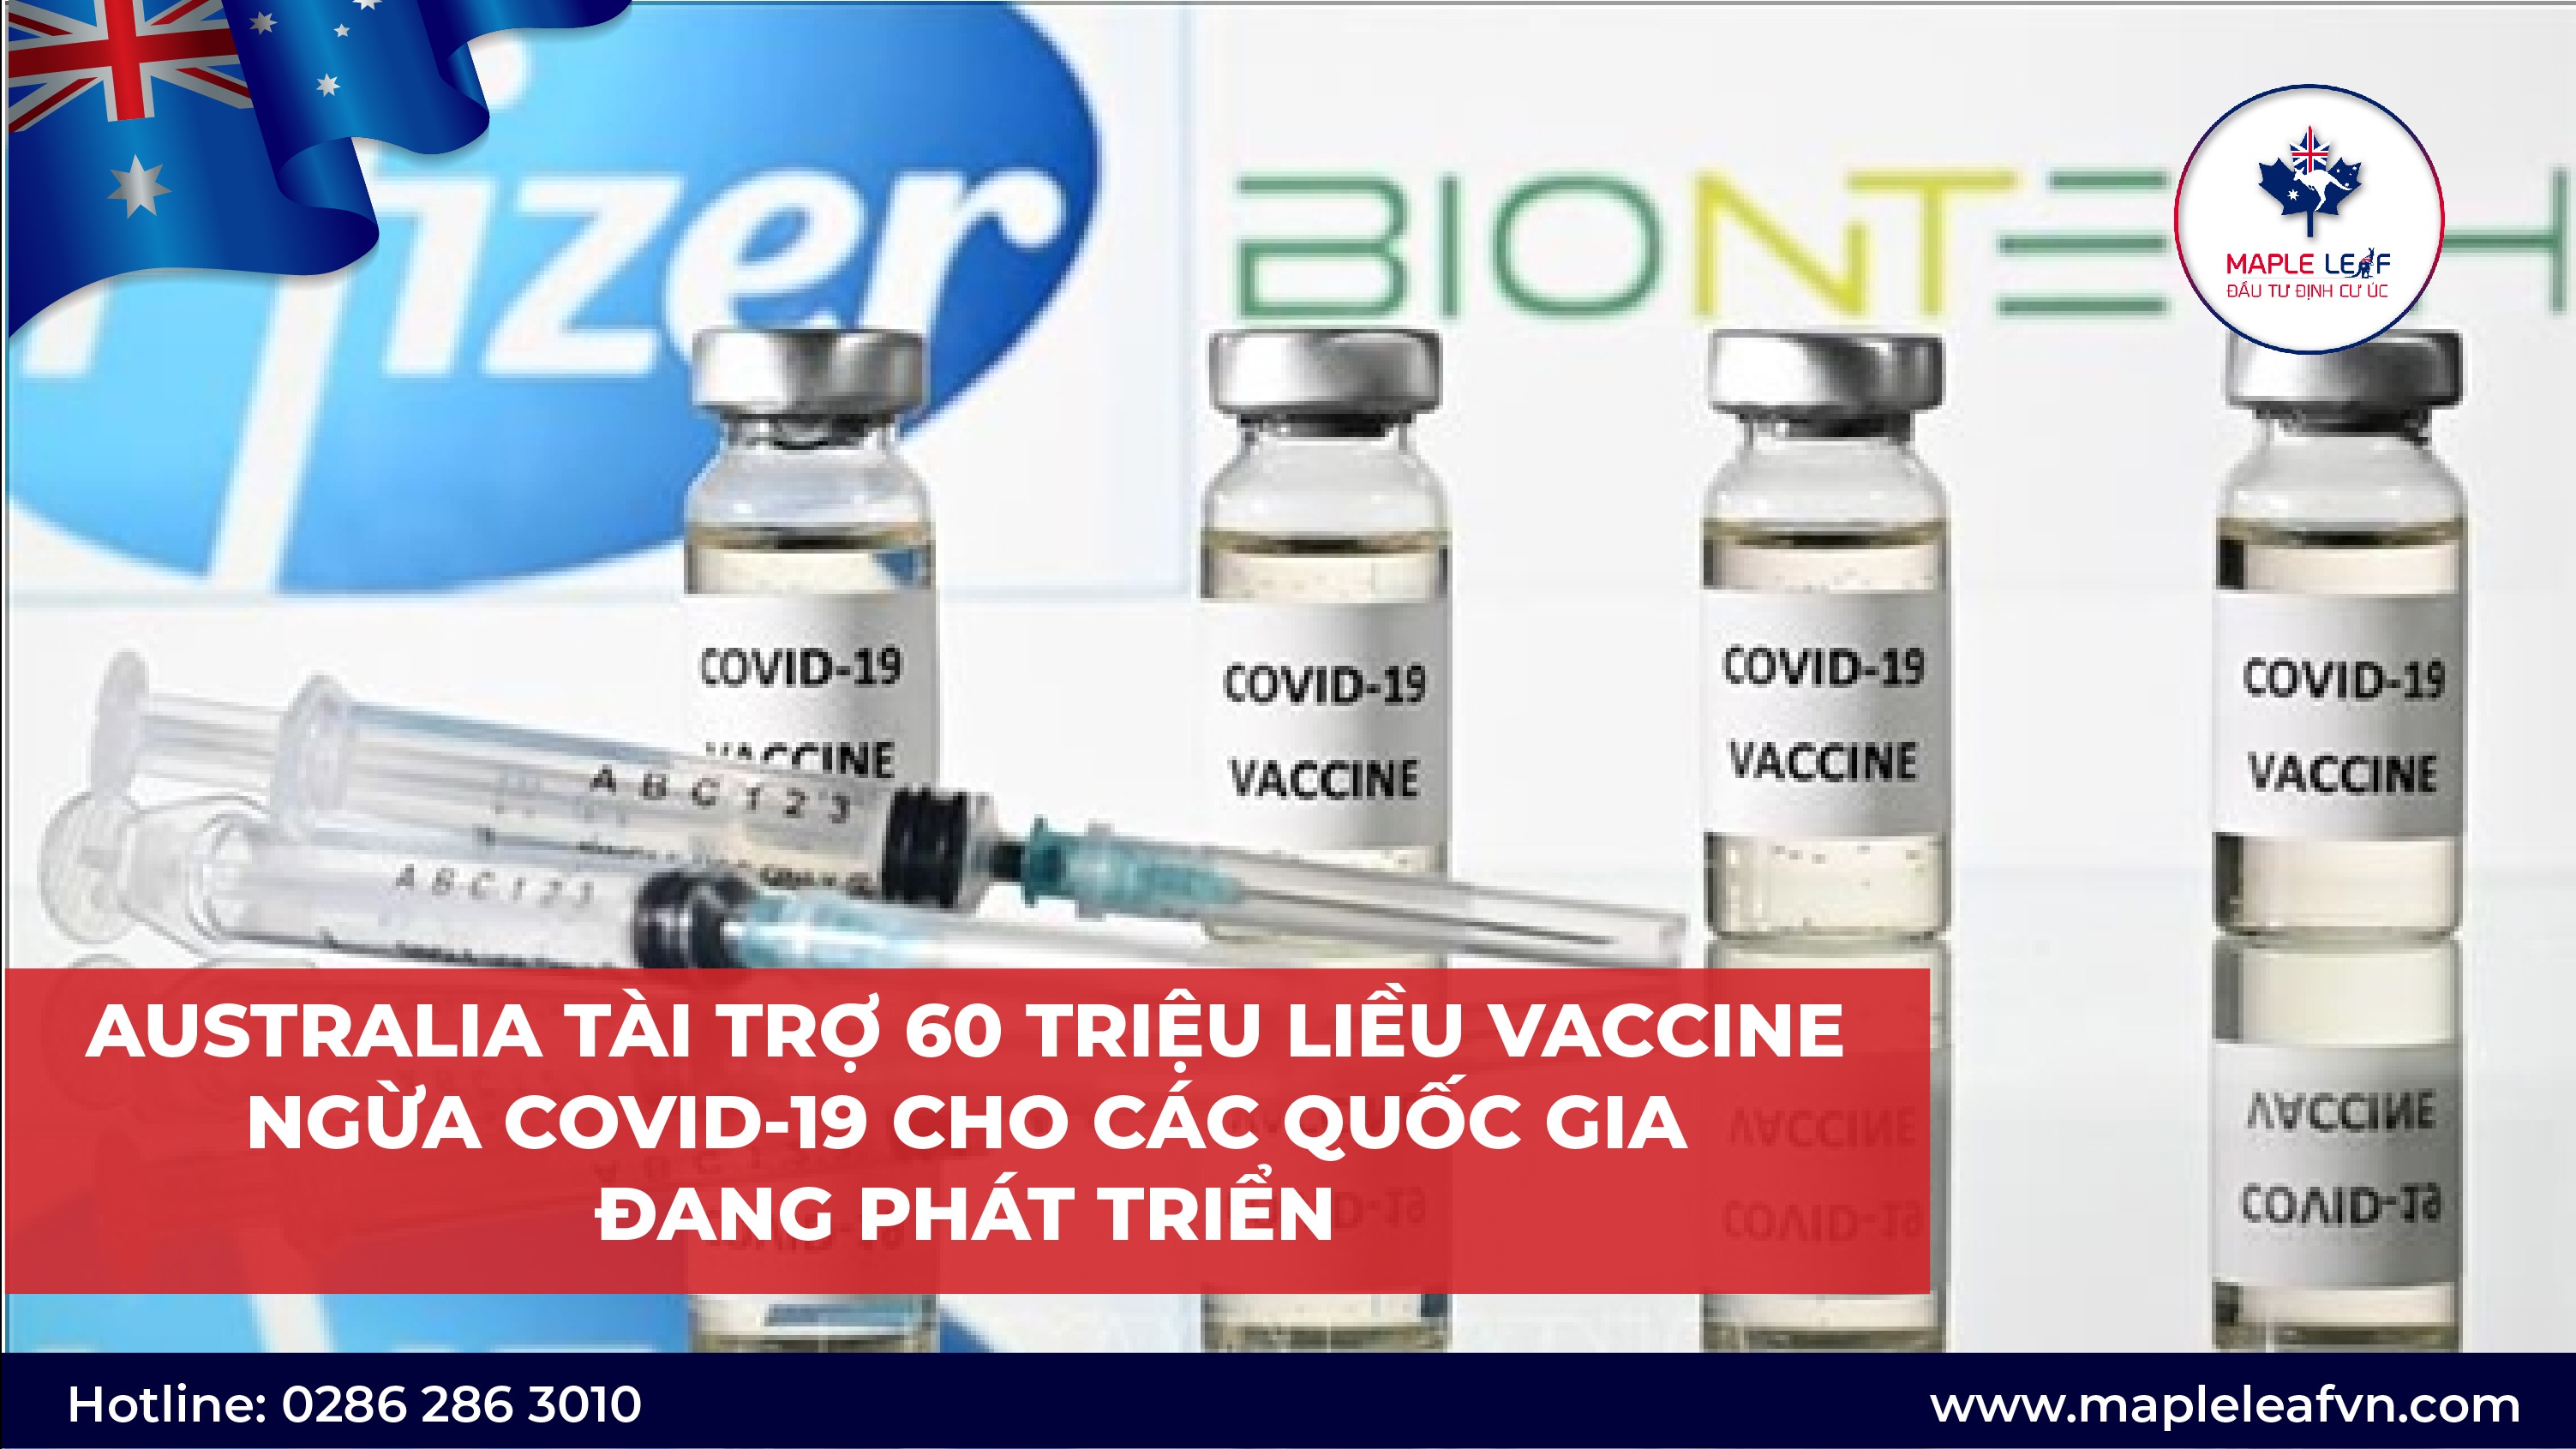 australia-tai-tro-60-trieu-lieu-vaccine-ngua-covid-19-cho-cac-quoc-gia-dang-phat-trien